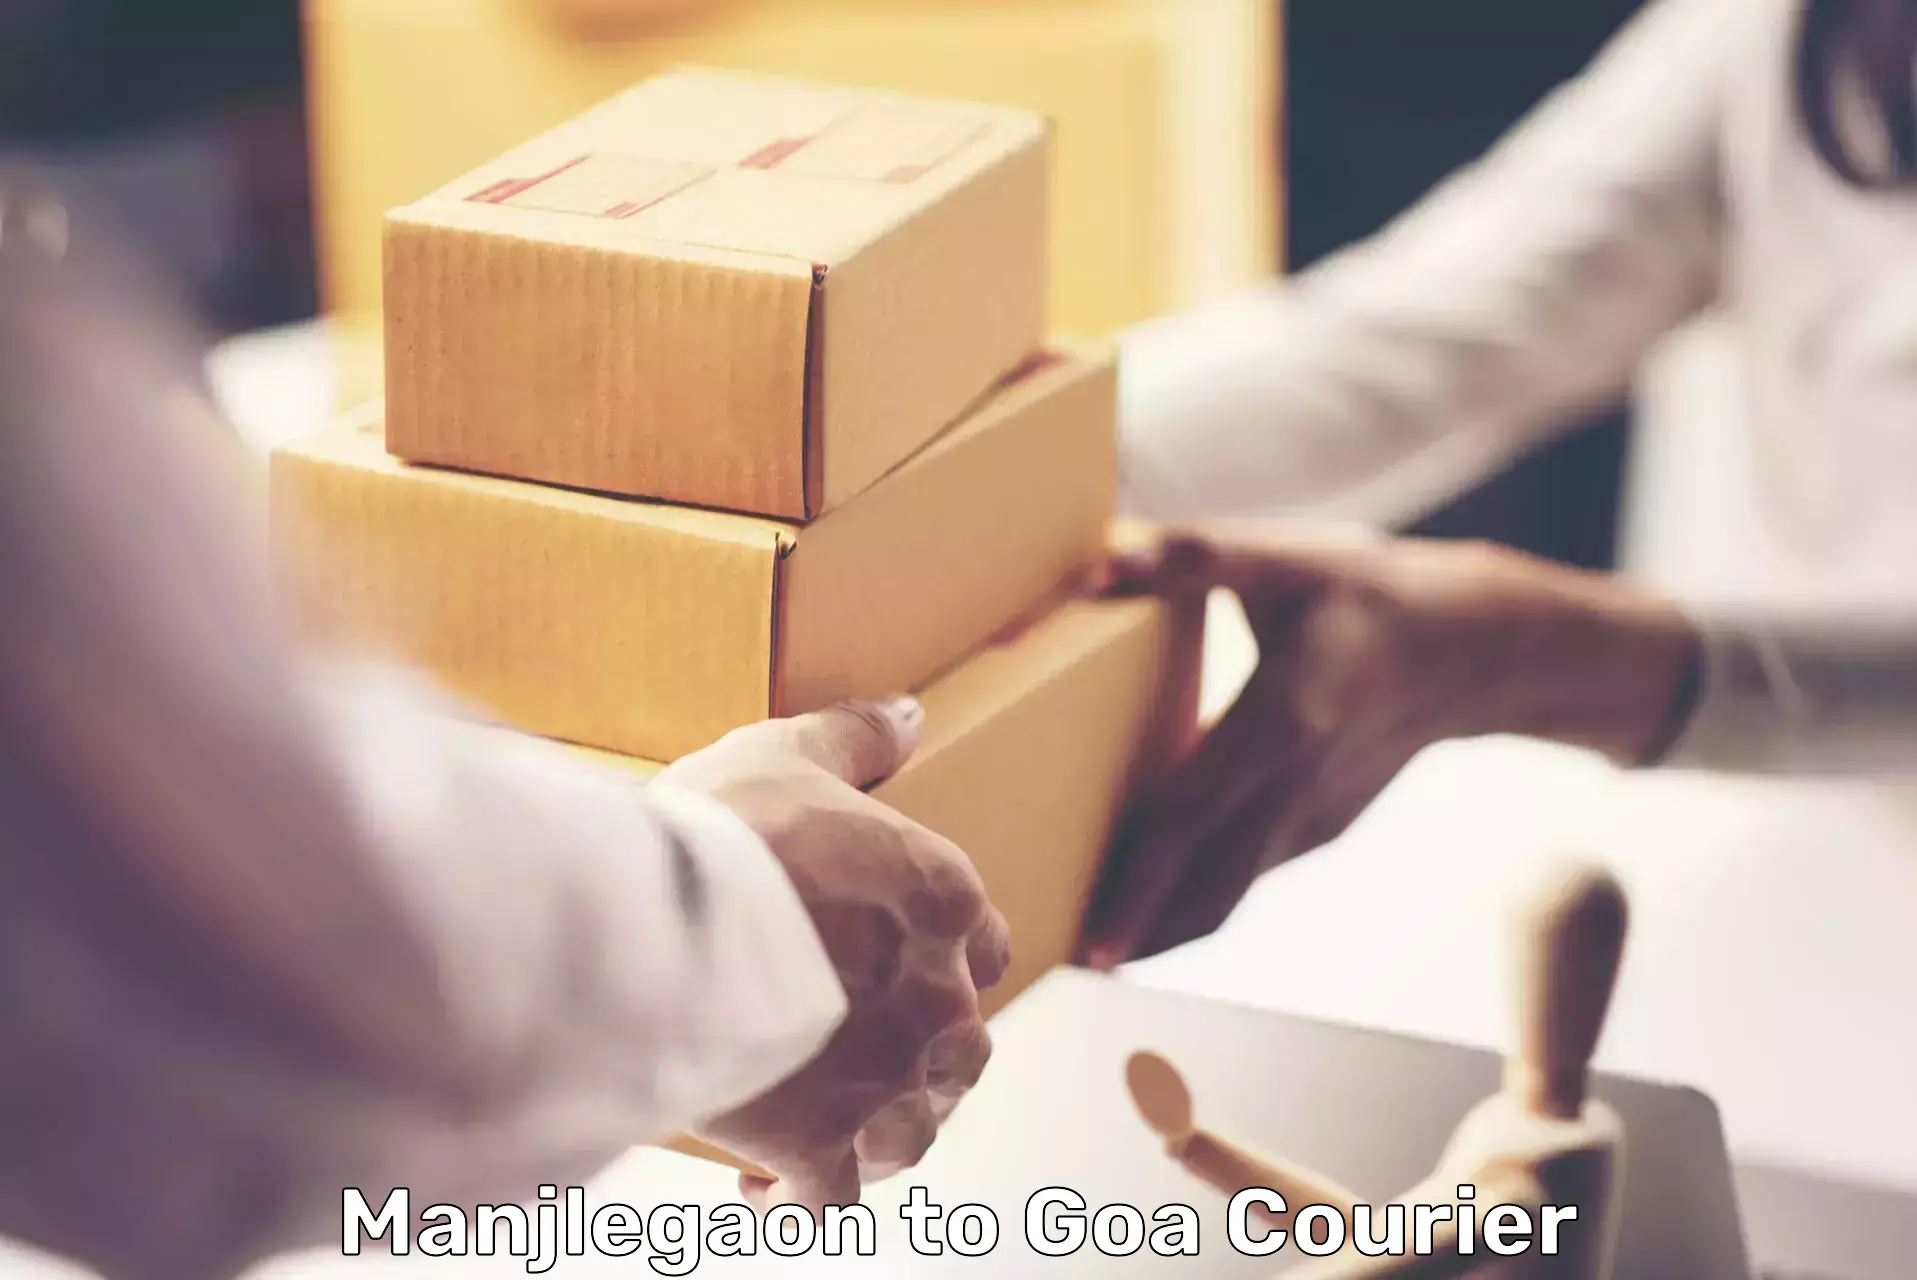 Innovative courier solutions Manjlegaon to South Goa